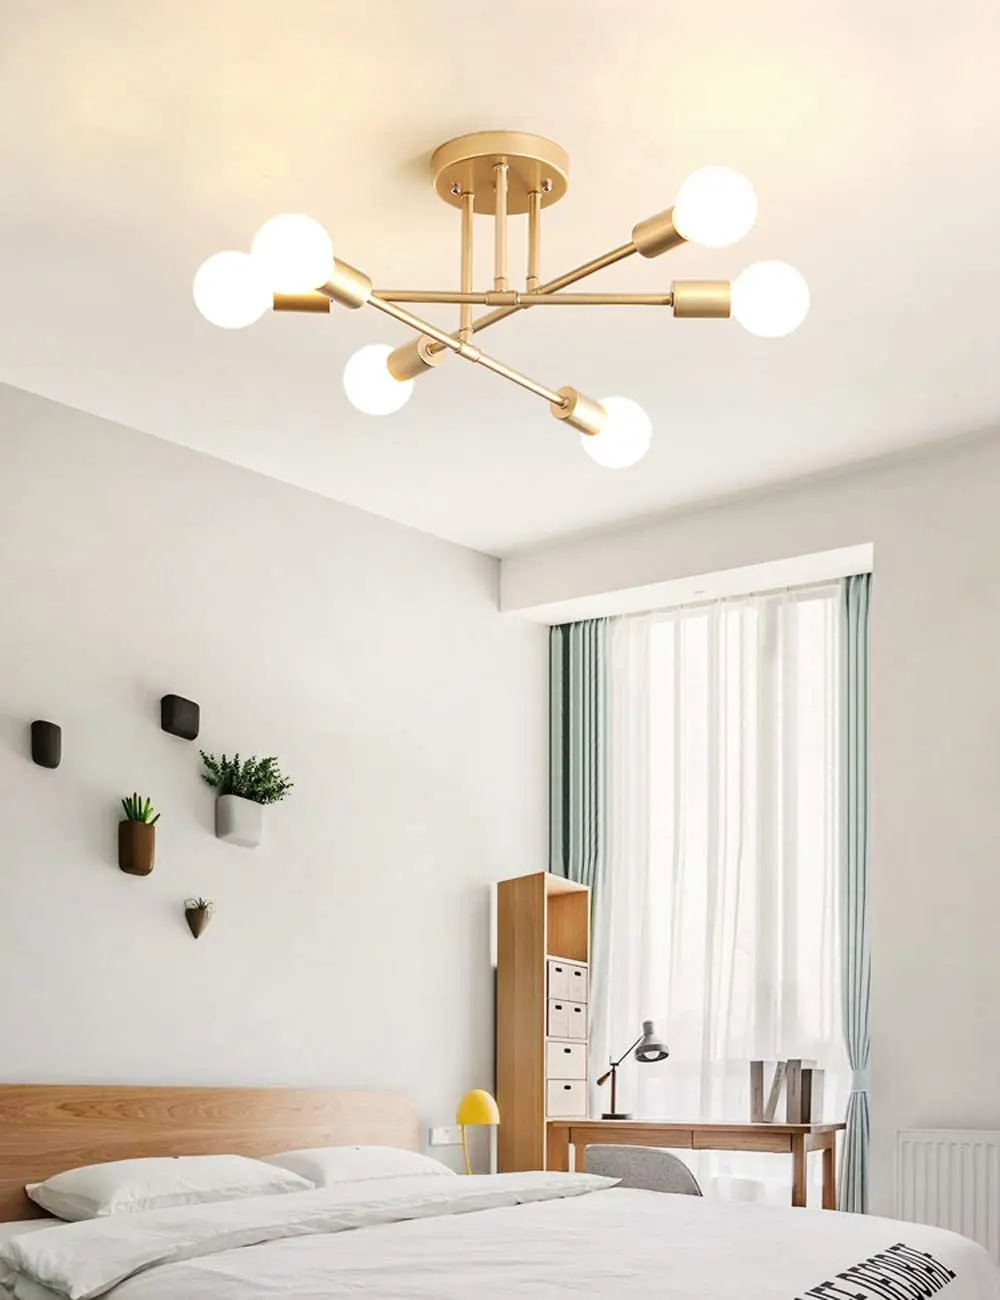  Роскошная Современная Люстра Dellemade современная люстра в виде спутника потолочный светильник с 6 лампочками для спальни столовой кухни